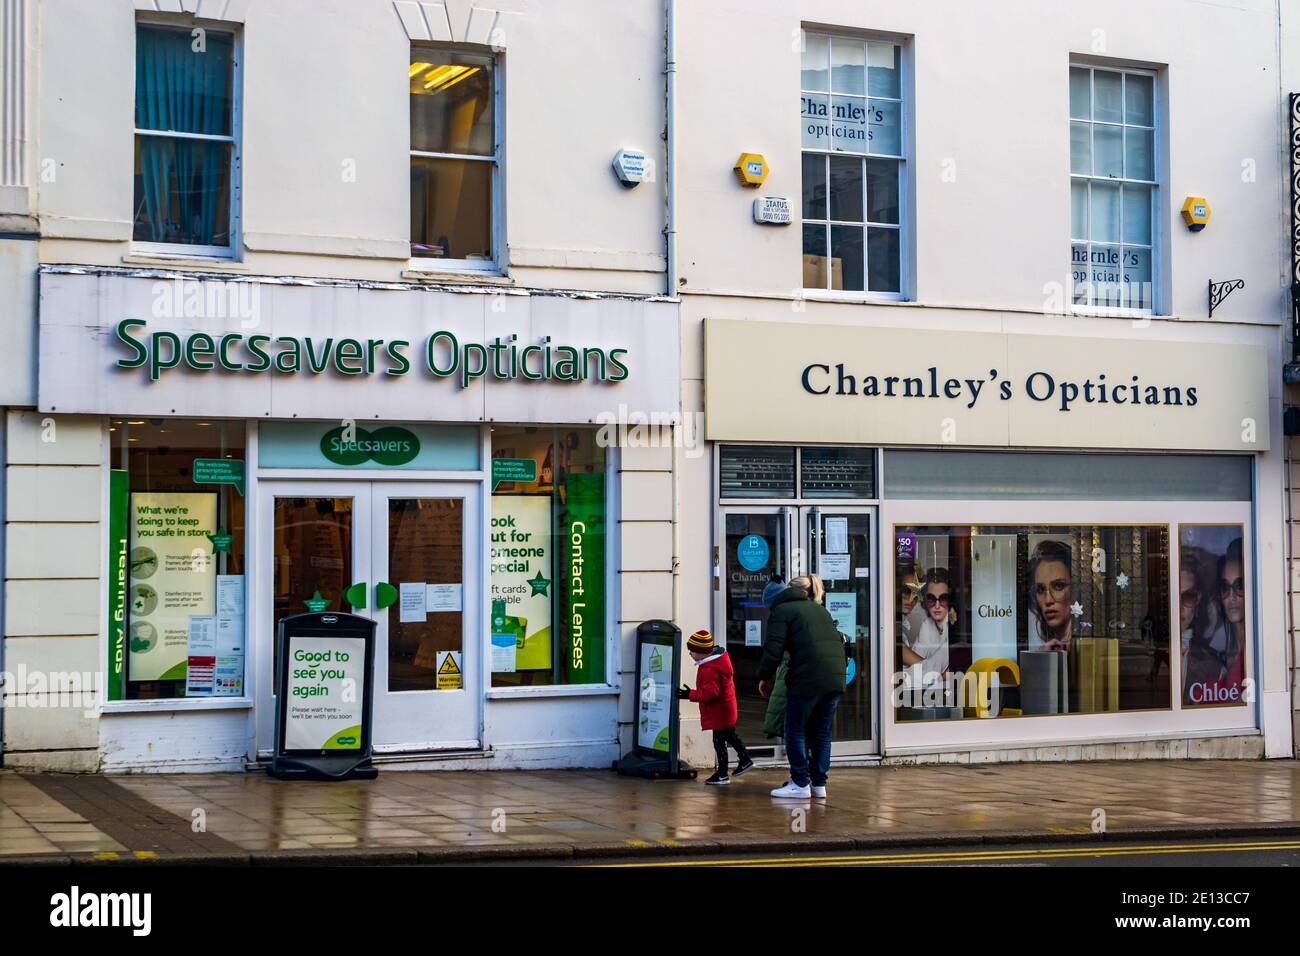 Dos ópticos rivales uno al lado del otro en Leamington Spa Parade, Warwickshire, Reino Unido. Optians de Specsavers y Otians de Charnley. Foto de stock